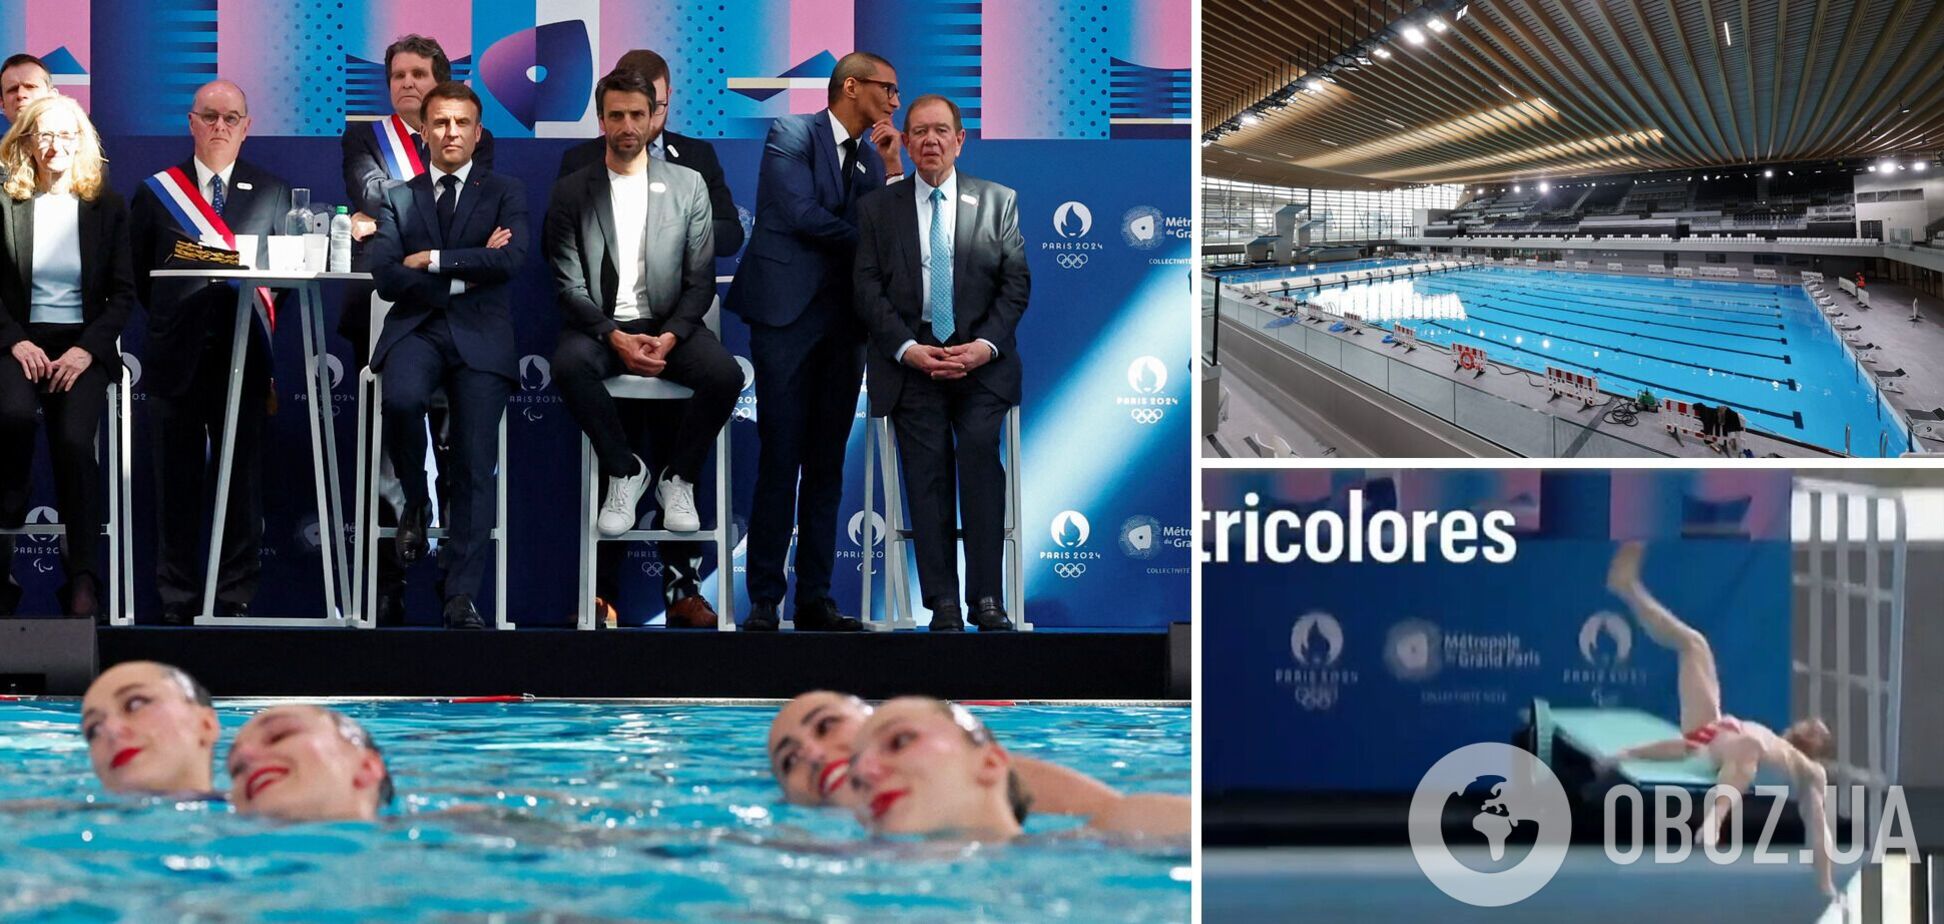 На глазах у Макрона... В Париже открытие Олимпийского Aquatics центра пошло не по плану. Видео